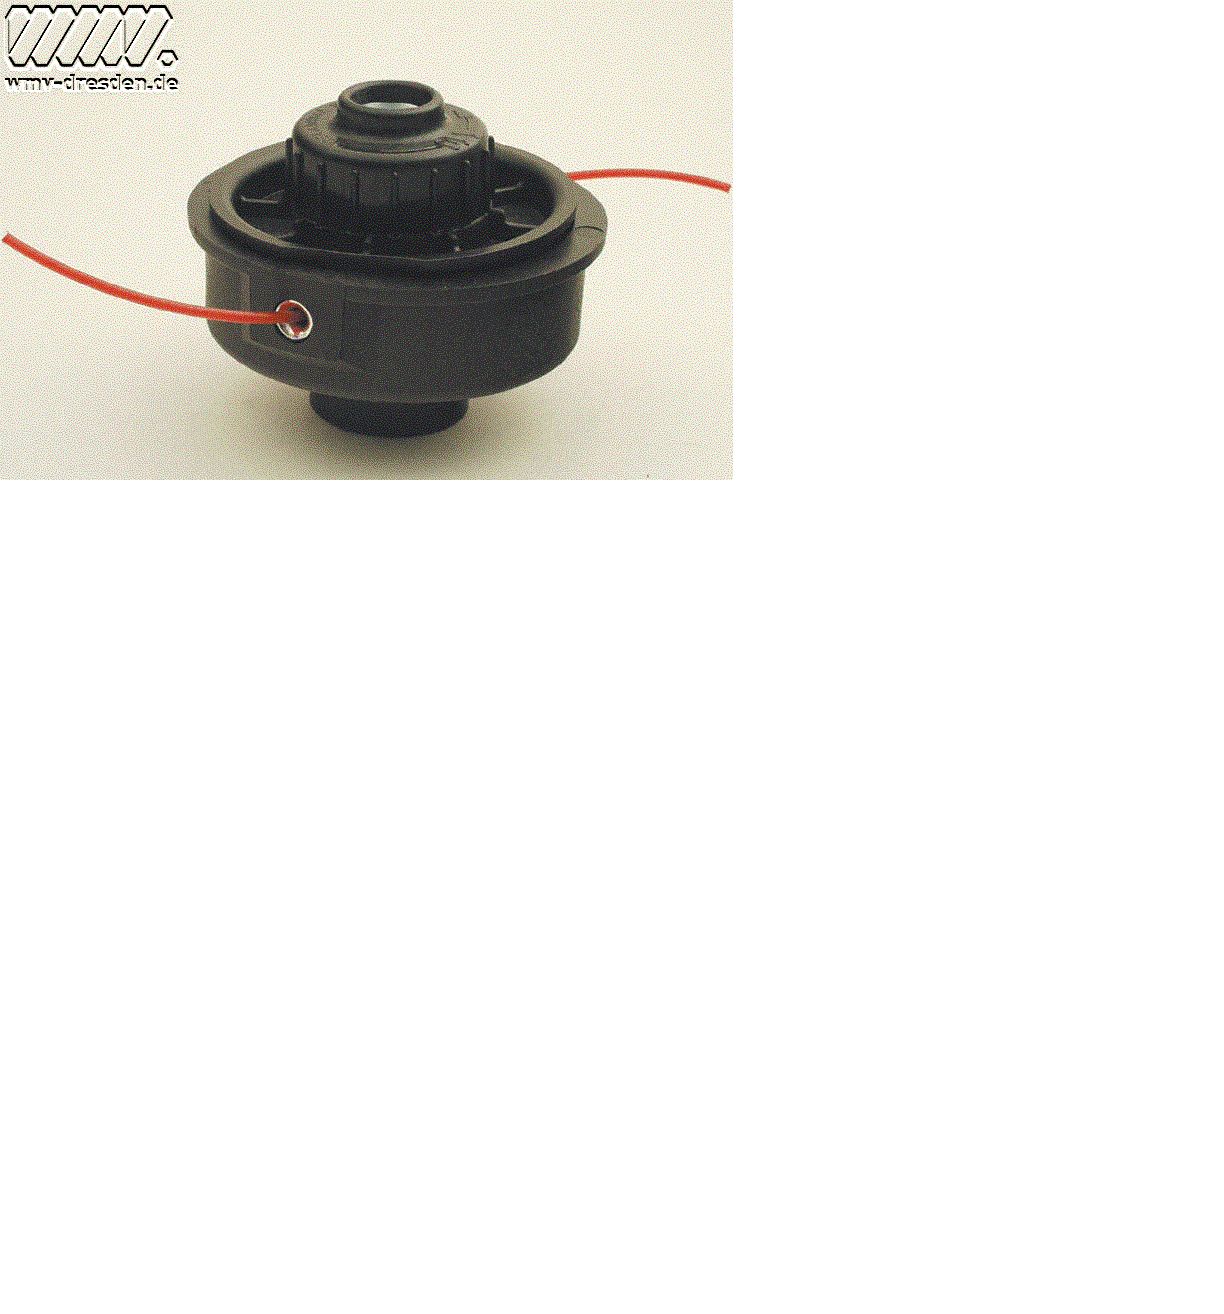 Artikel WMV-Fadenkopf-R600-500 Hersteller: WMV-verschiedenes 